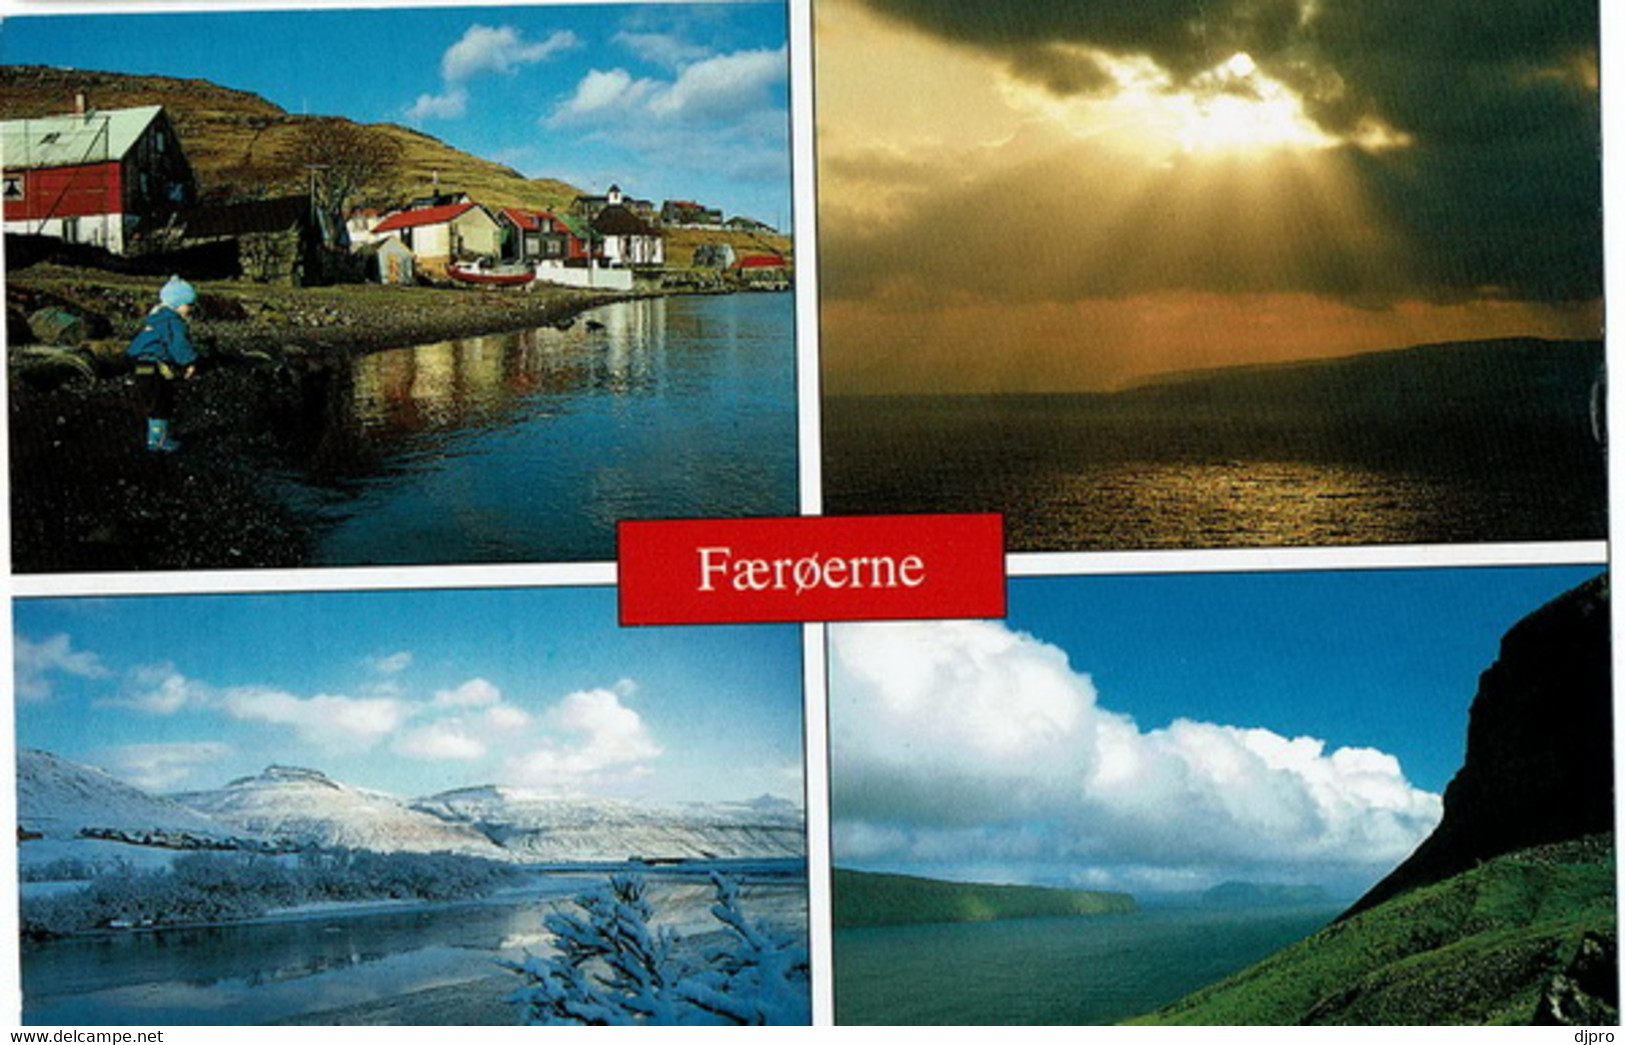 Faeroerne - Faroe Islands